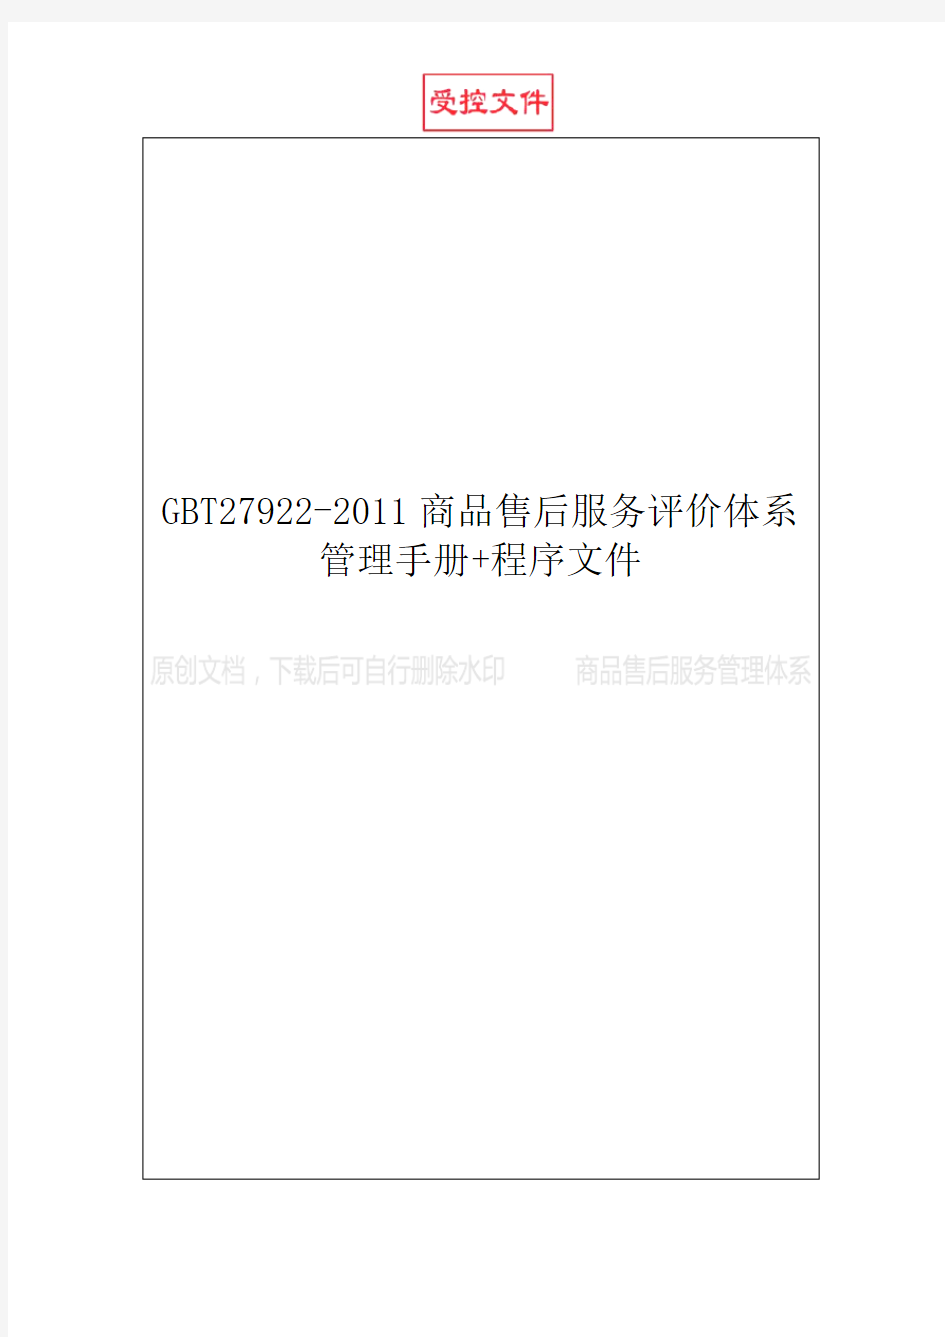 GBT27922-2011商品售后服务评价体系管理手册+程序文件